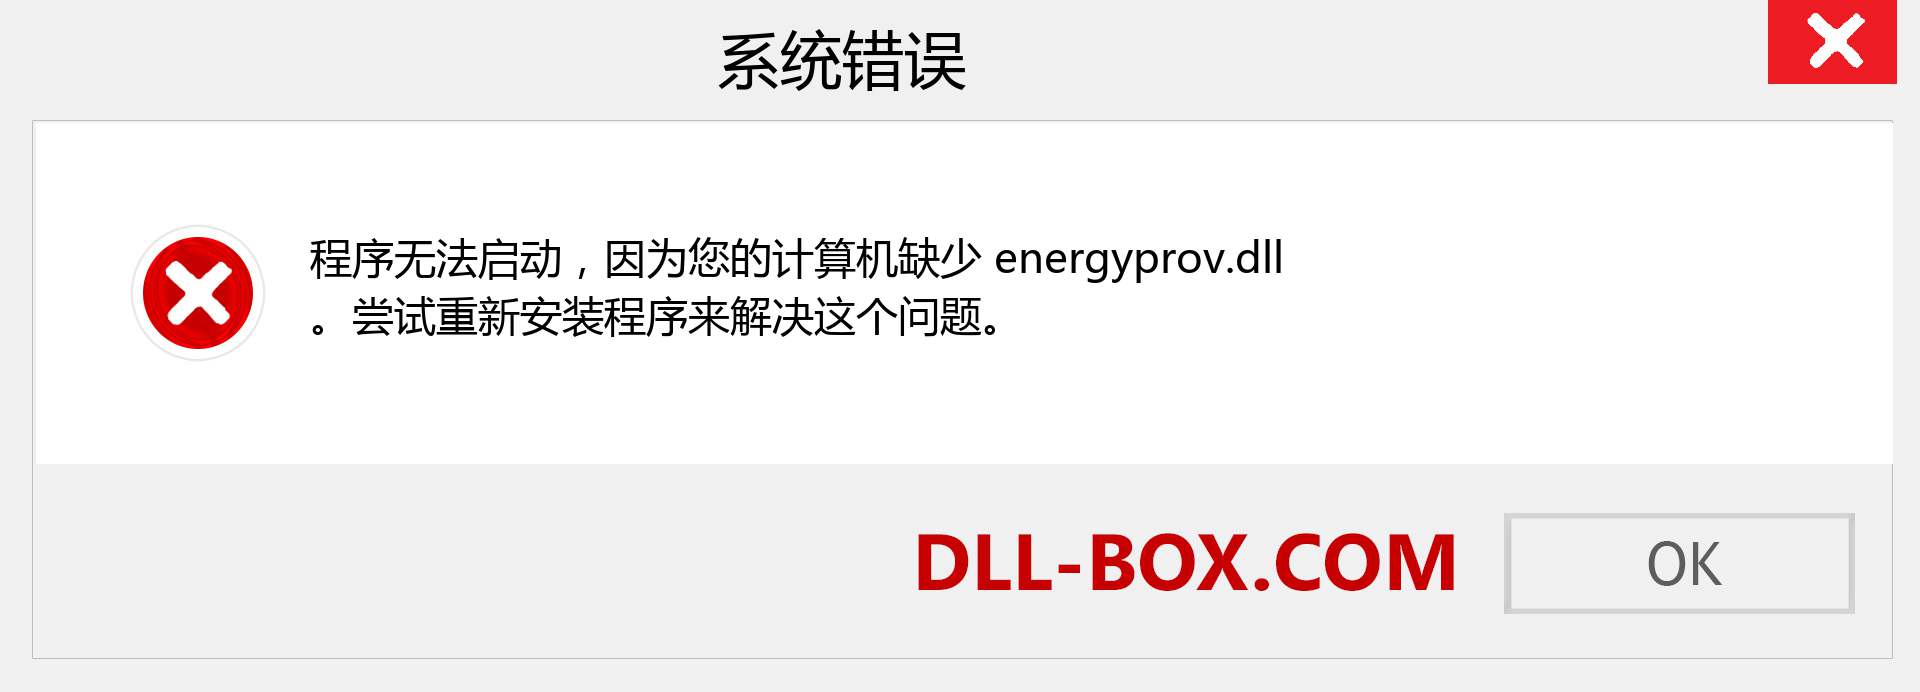 energyprov.dll 文件丢失？。 适用于 Windows 7、8、10 的下载 - 修复 Windows、照片、图像上的 energyprov dll 丢失错误